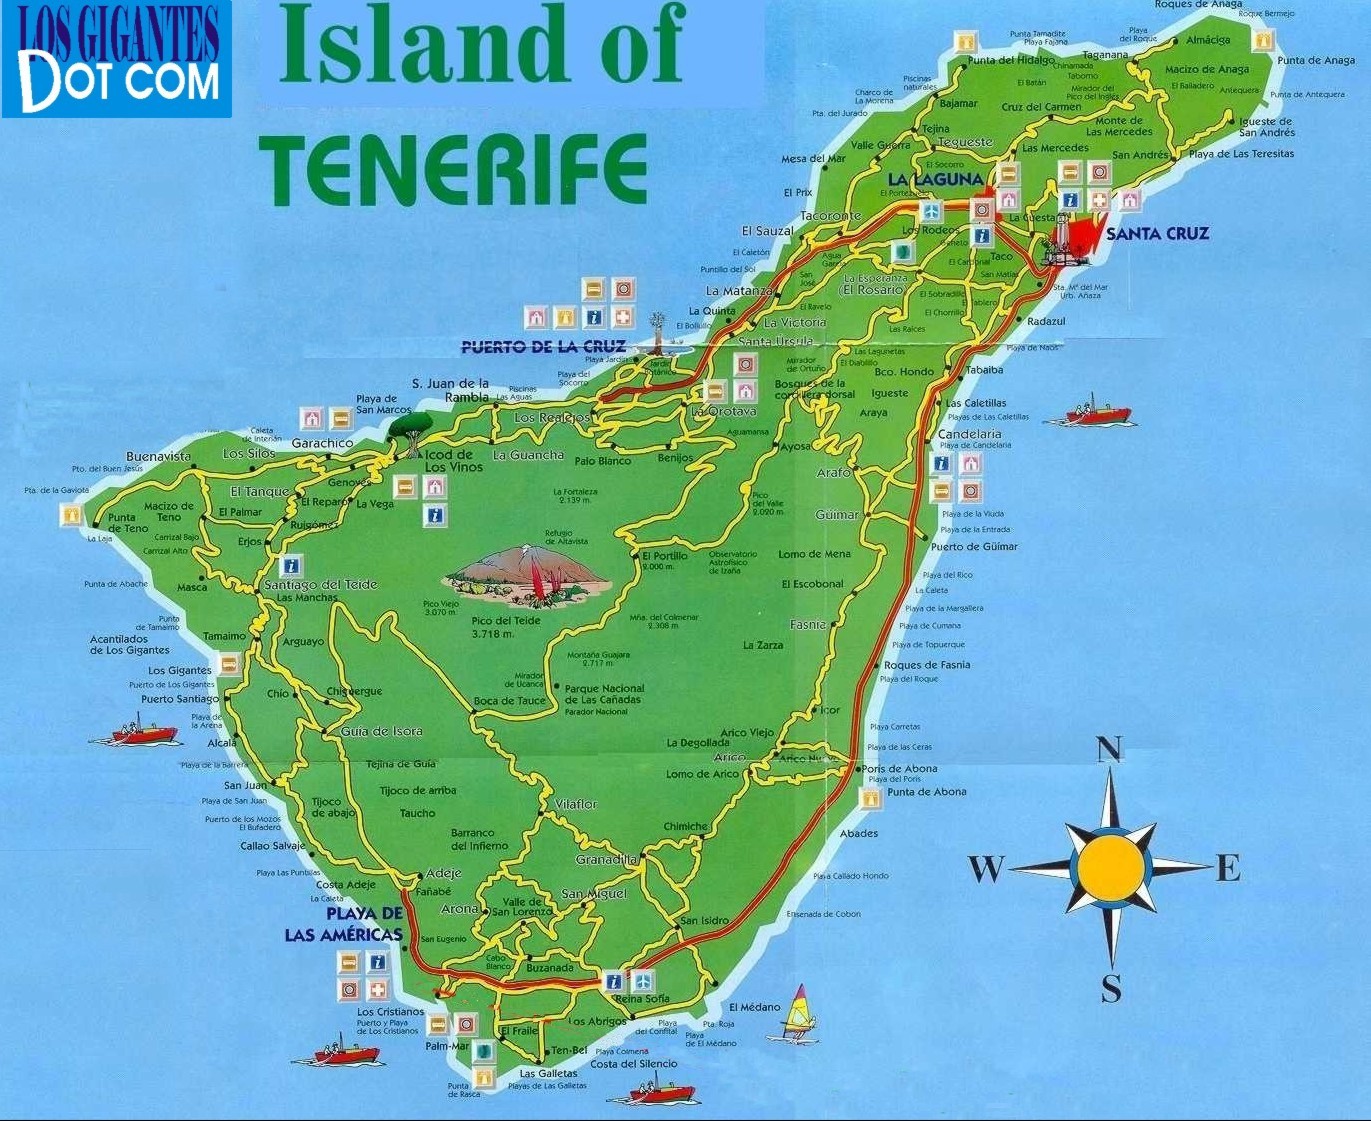 insel von Tenerife karte